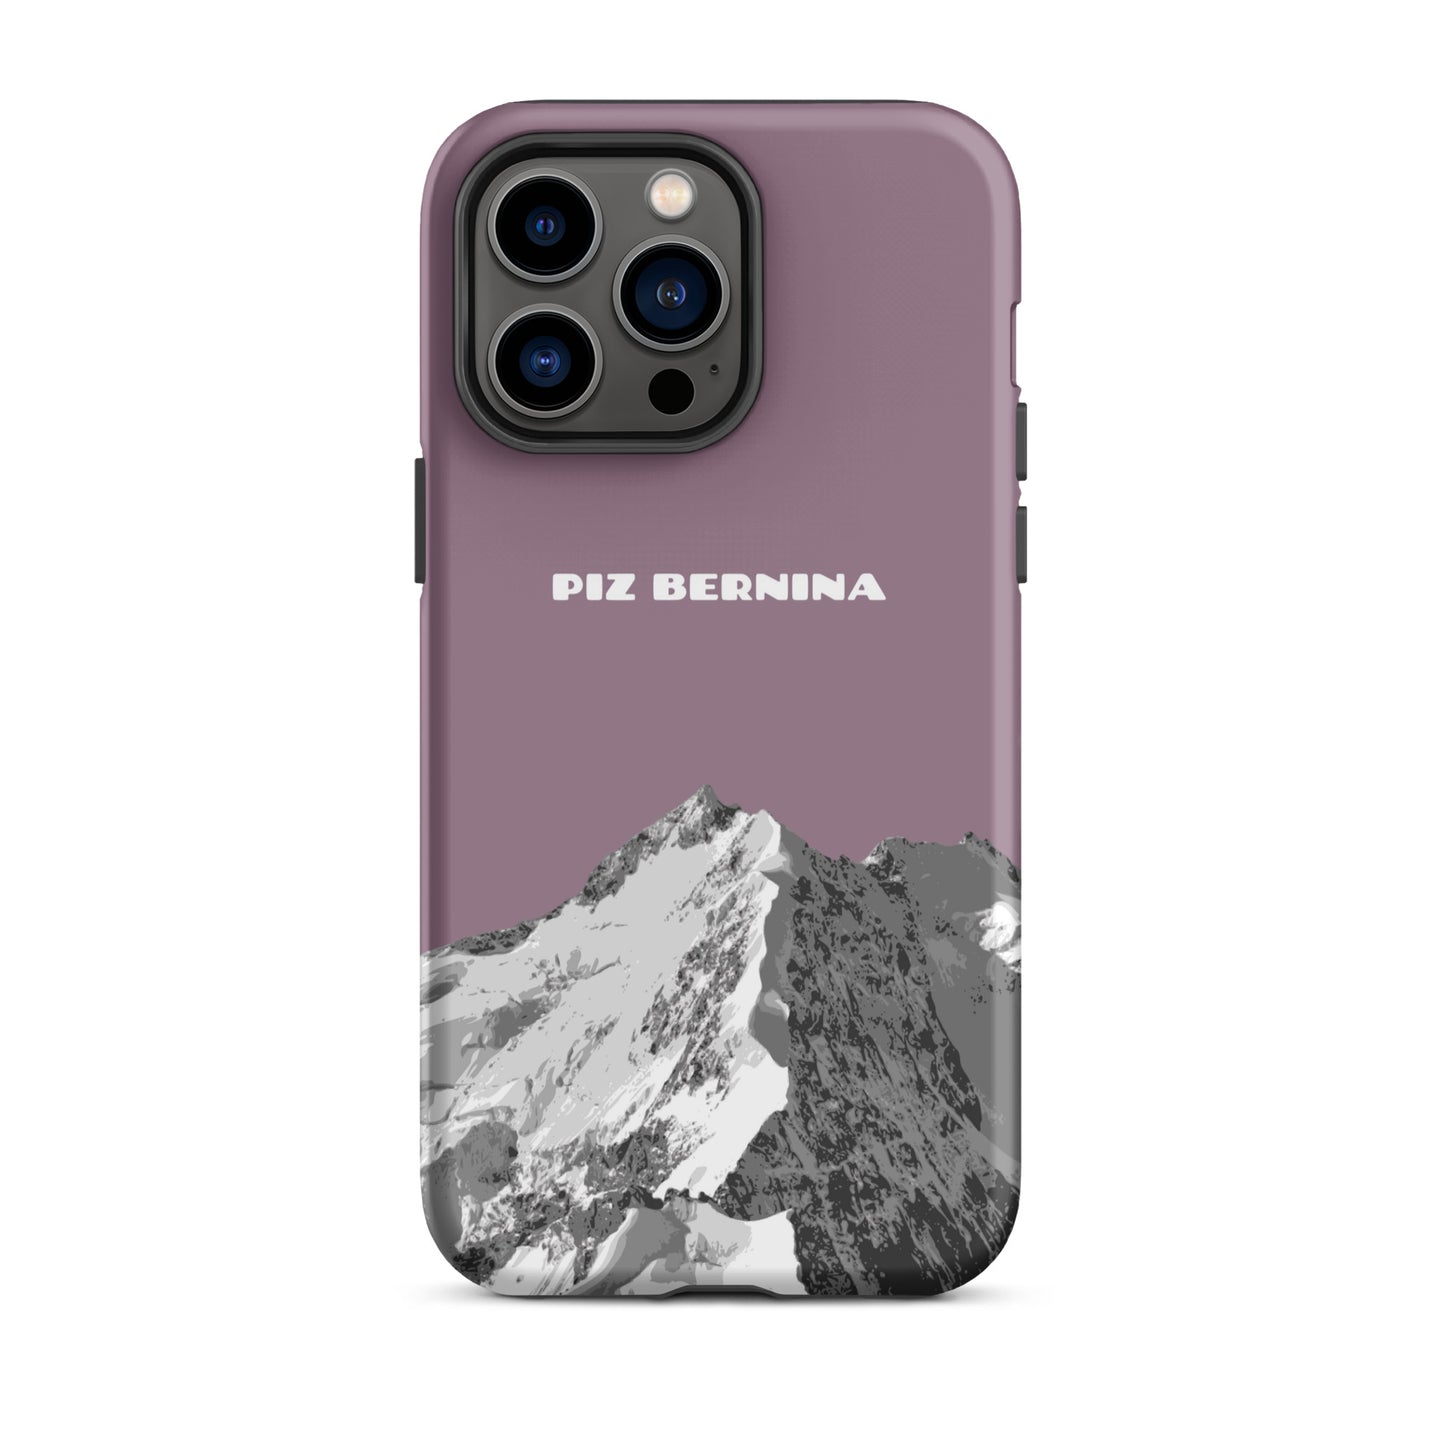 Hülle für das iPhone 14 Pro Max von Apple in der Farbe Pastellviolett, dass den Piz Bernina in Graubünden zeigt.